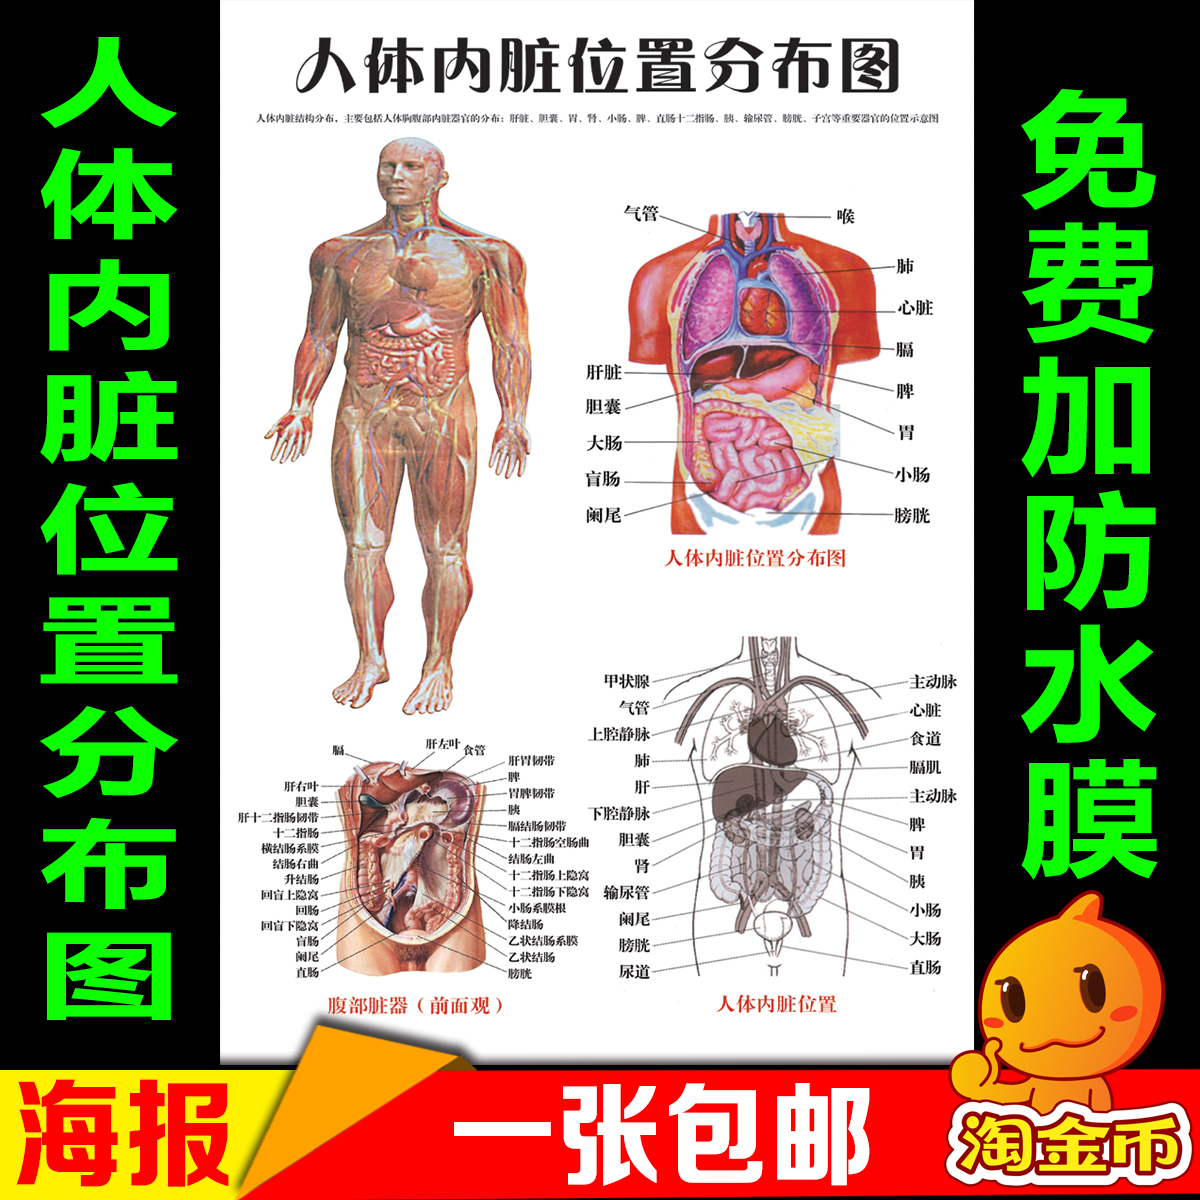 医院人体内脏位置分布图 人体结构系统器官功能解剖图 挂图海报